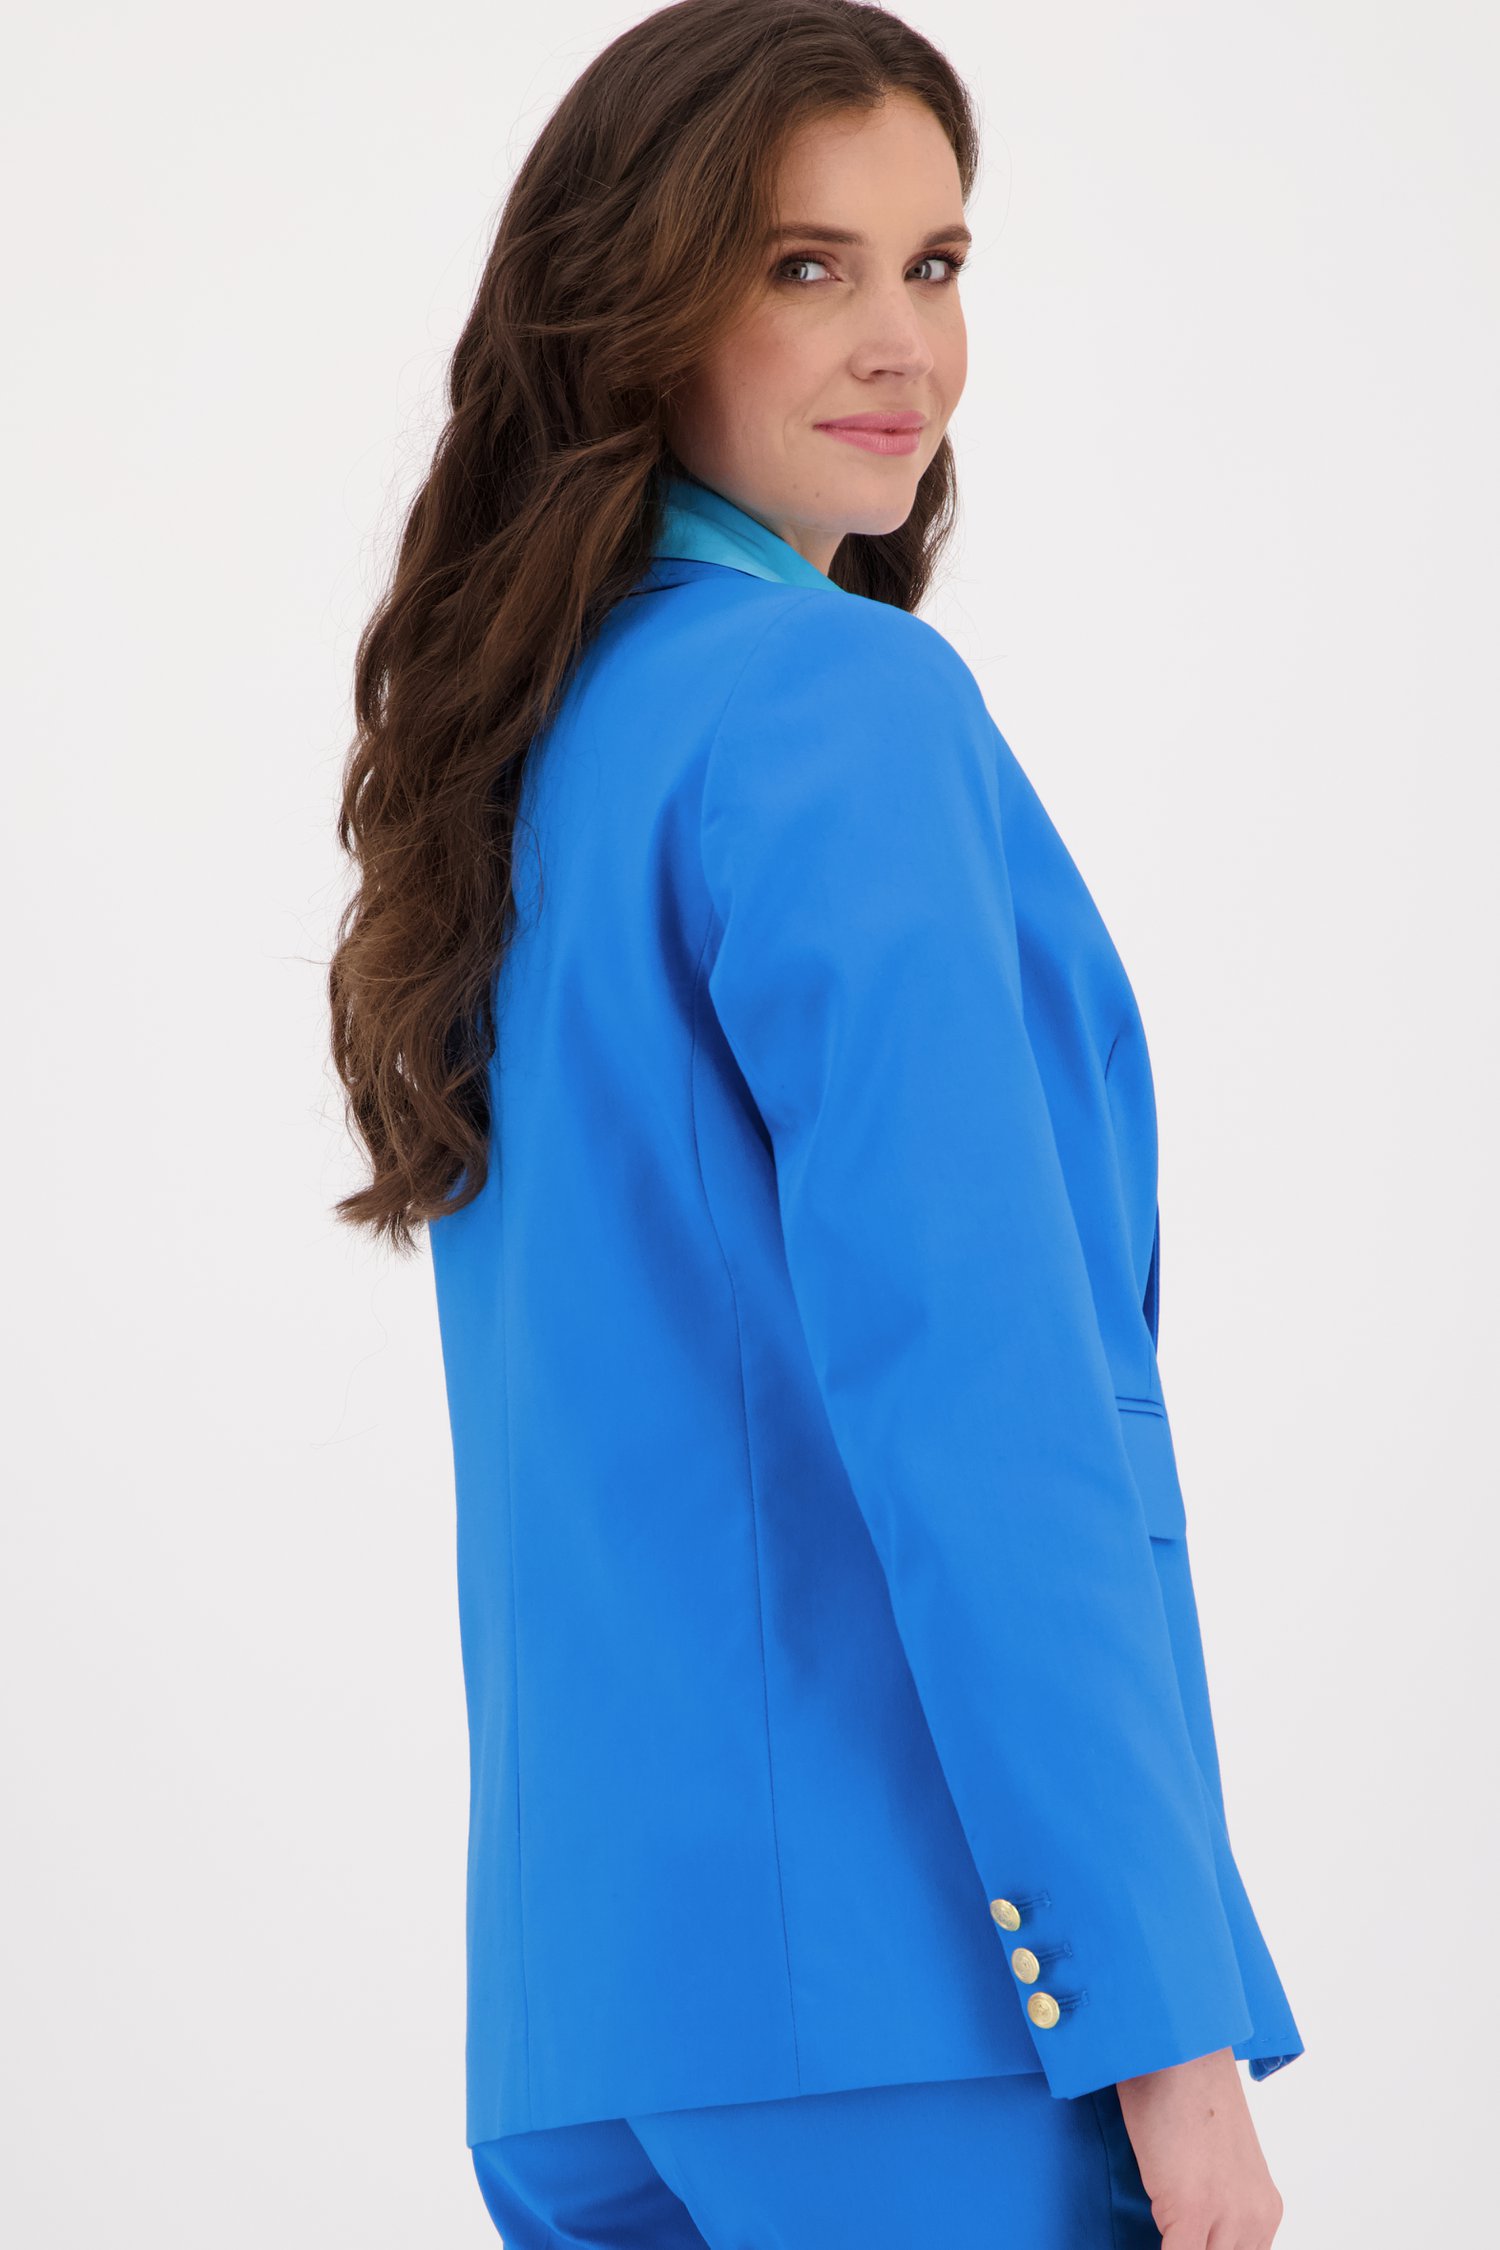 Blauwe blazer van More & More voor Dames